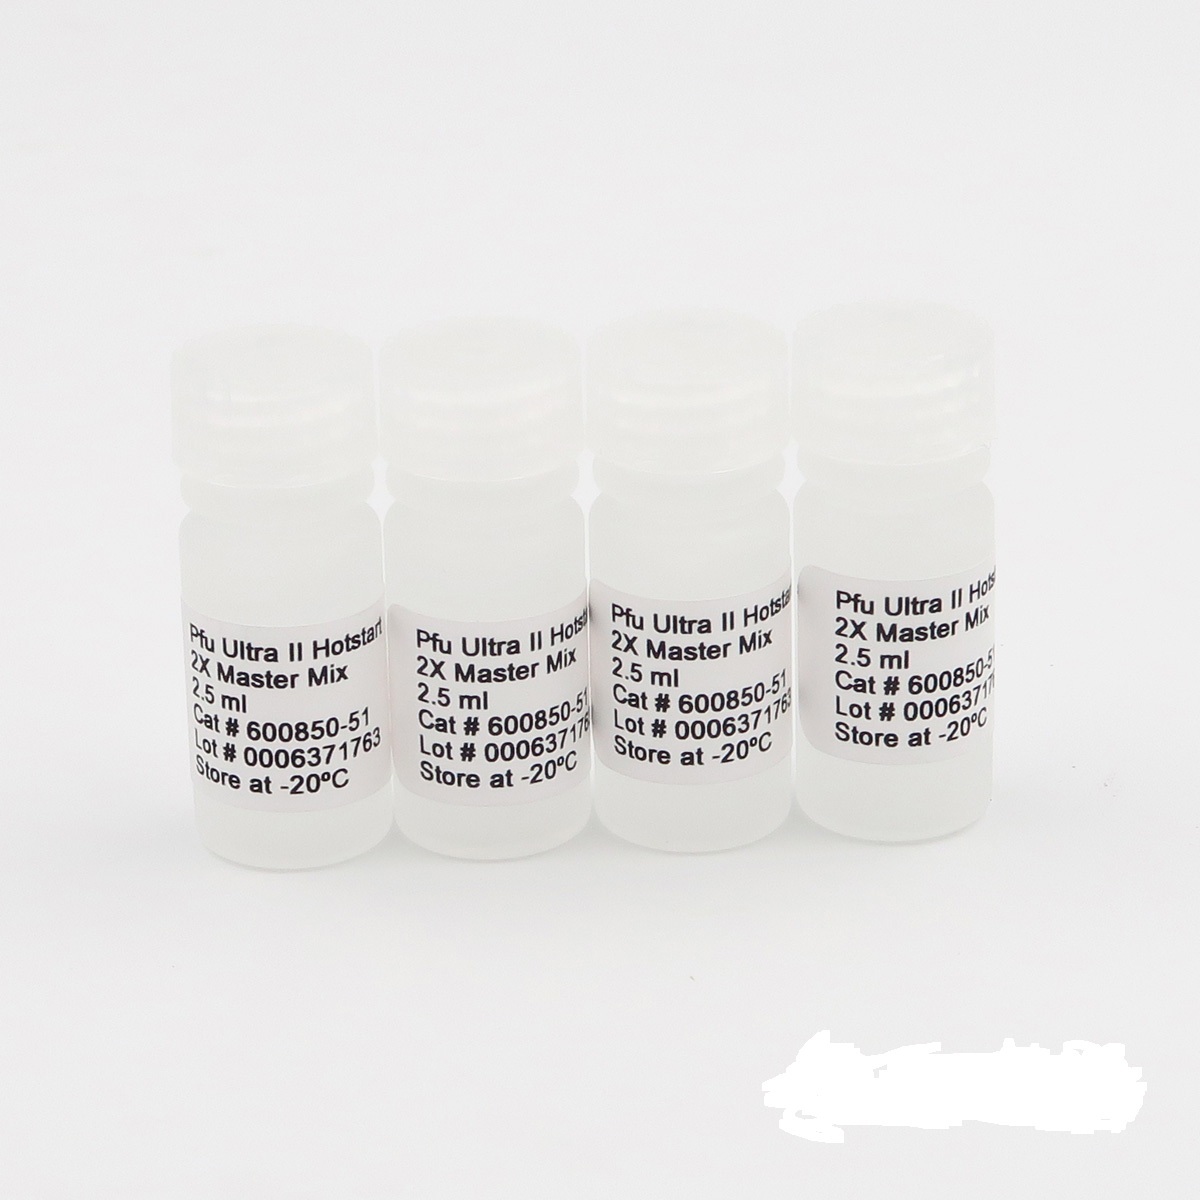 小反刍兽疫病毒染料法荧光定量RT-PCR试剂盒